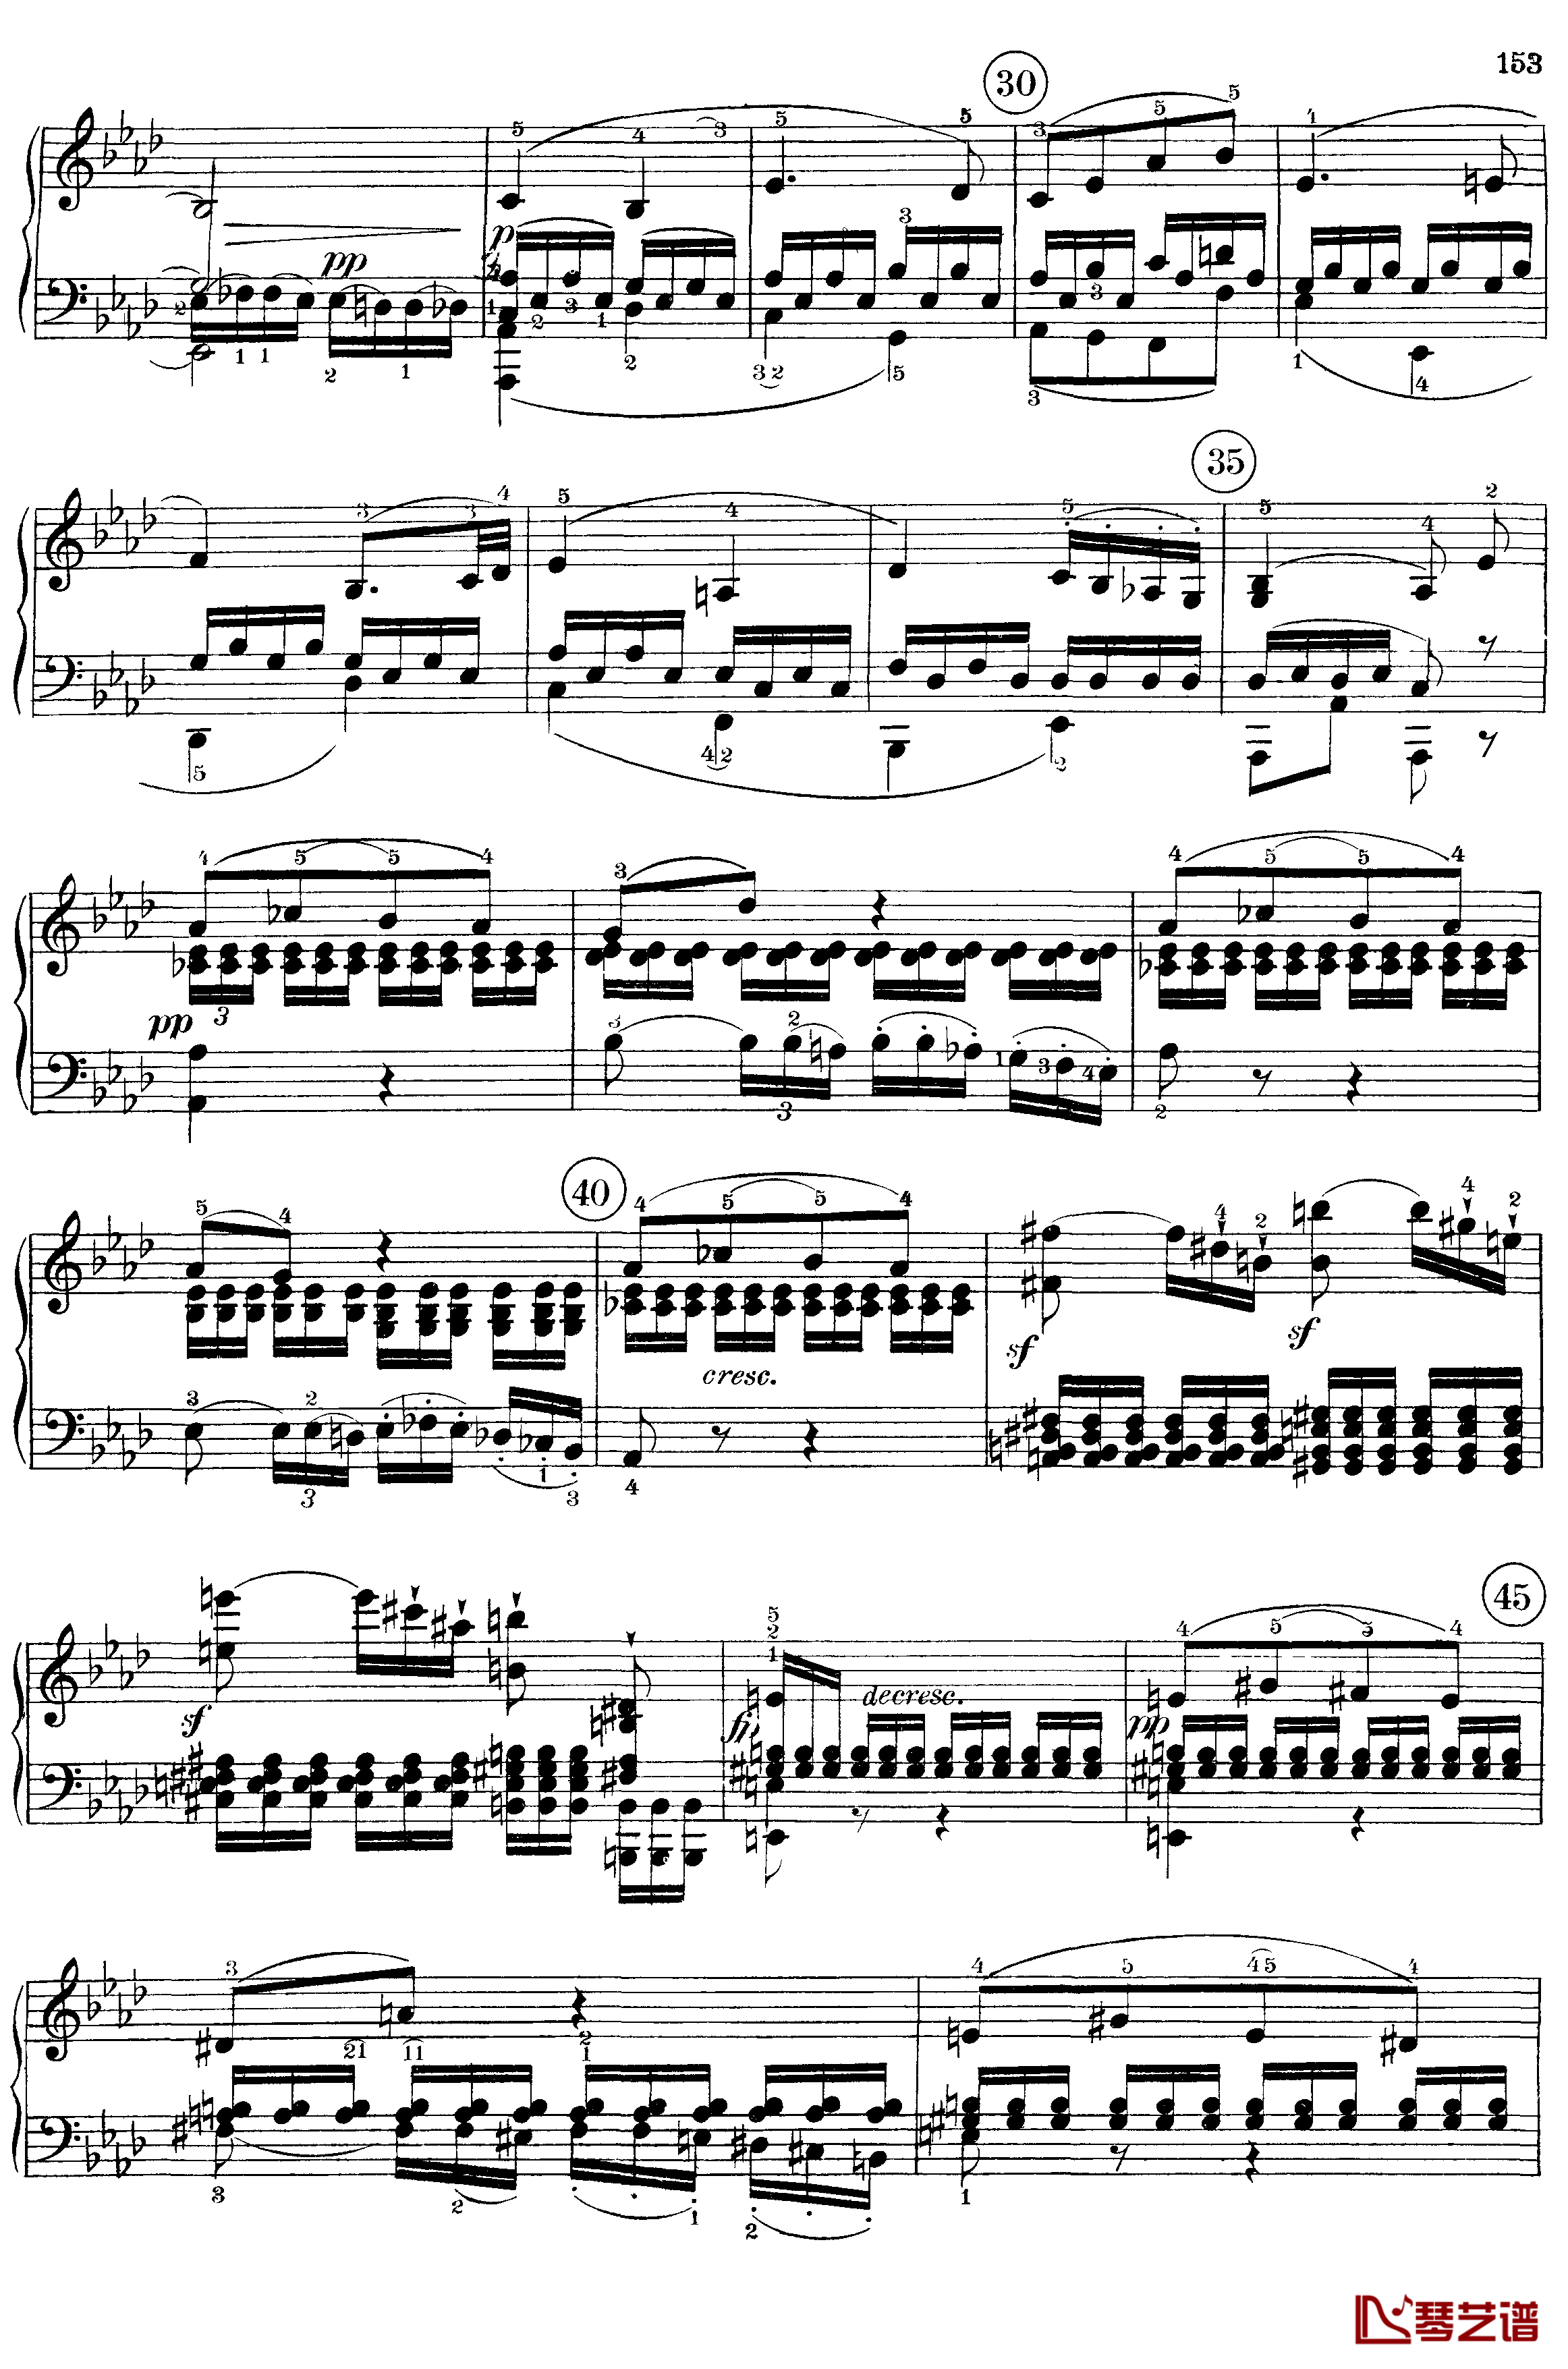 悲怆钢琴谱-c小调第八号钢琴奏鸣曲-全乐章-带指法版-贝多芬-beethoven11